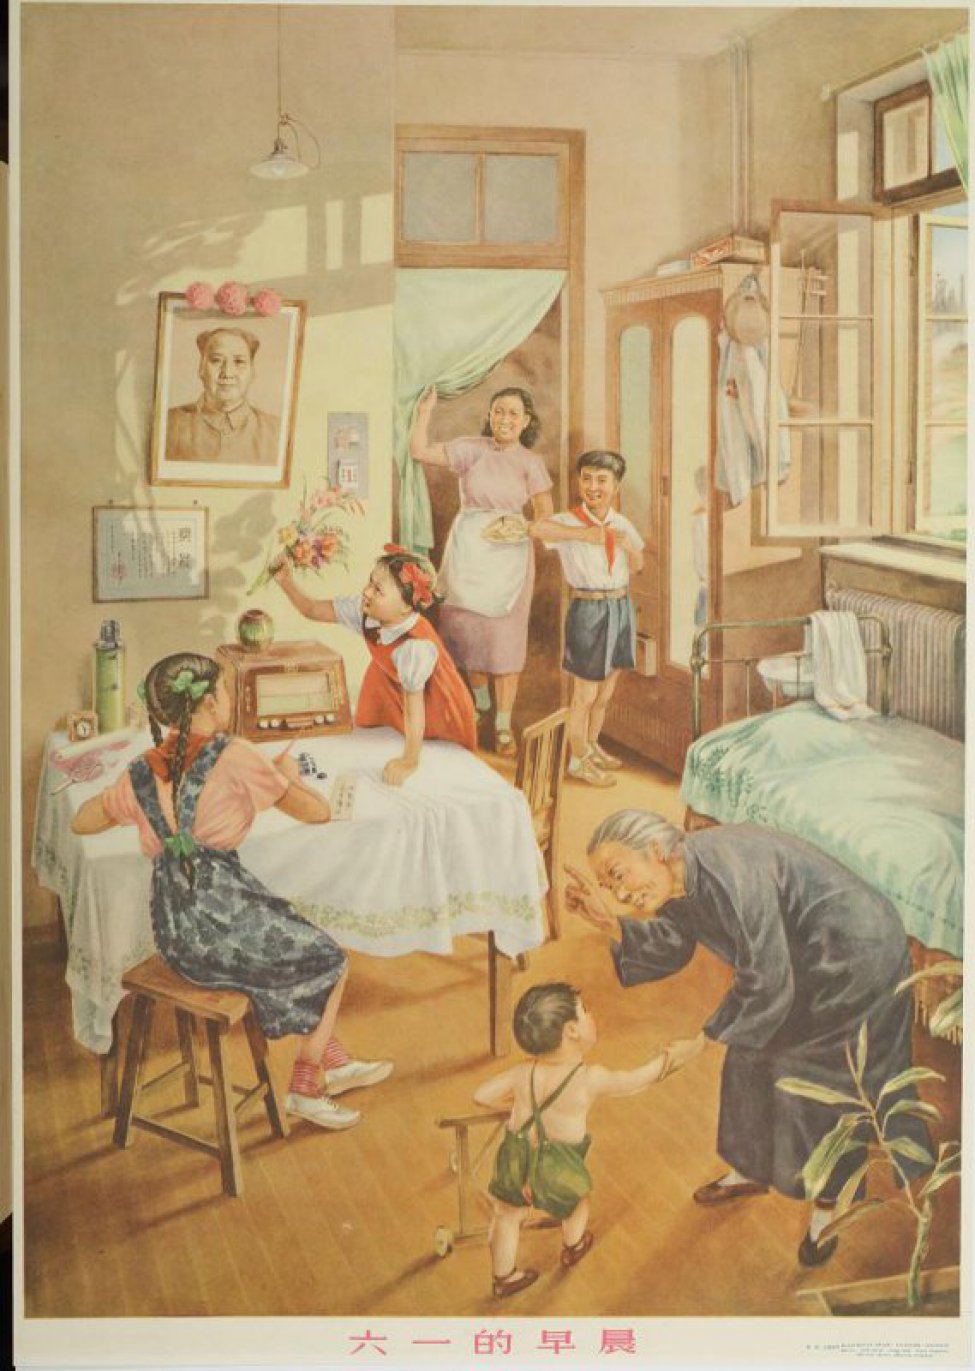 Изображена комната, в двери которой входит женщина с тарелкой в левой руке, слева от нее у шкафа , стоит мальчик, завязывающий пионерский галстук. Справа  за столом ( спиной к зрителю) сидит девочка, которая что-то пишет, другая ставит в вазу на радиоприемнике - цветы. У кровати ( слева от стола) бабушка, наклонившая что-то объясняет маленькому мальчику в зеленых штанишках.